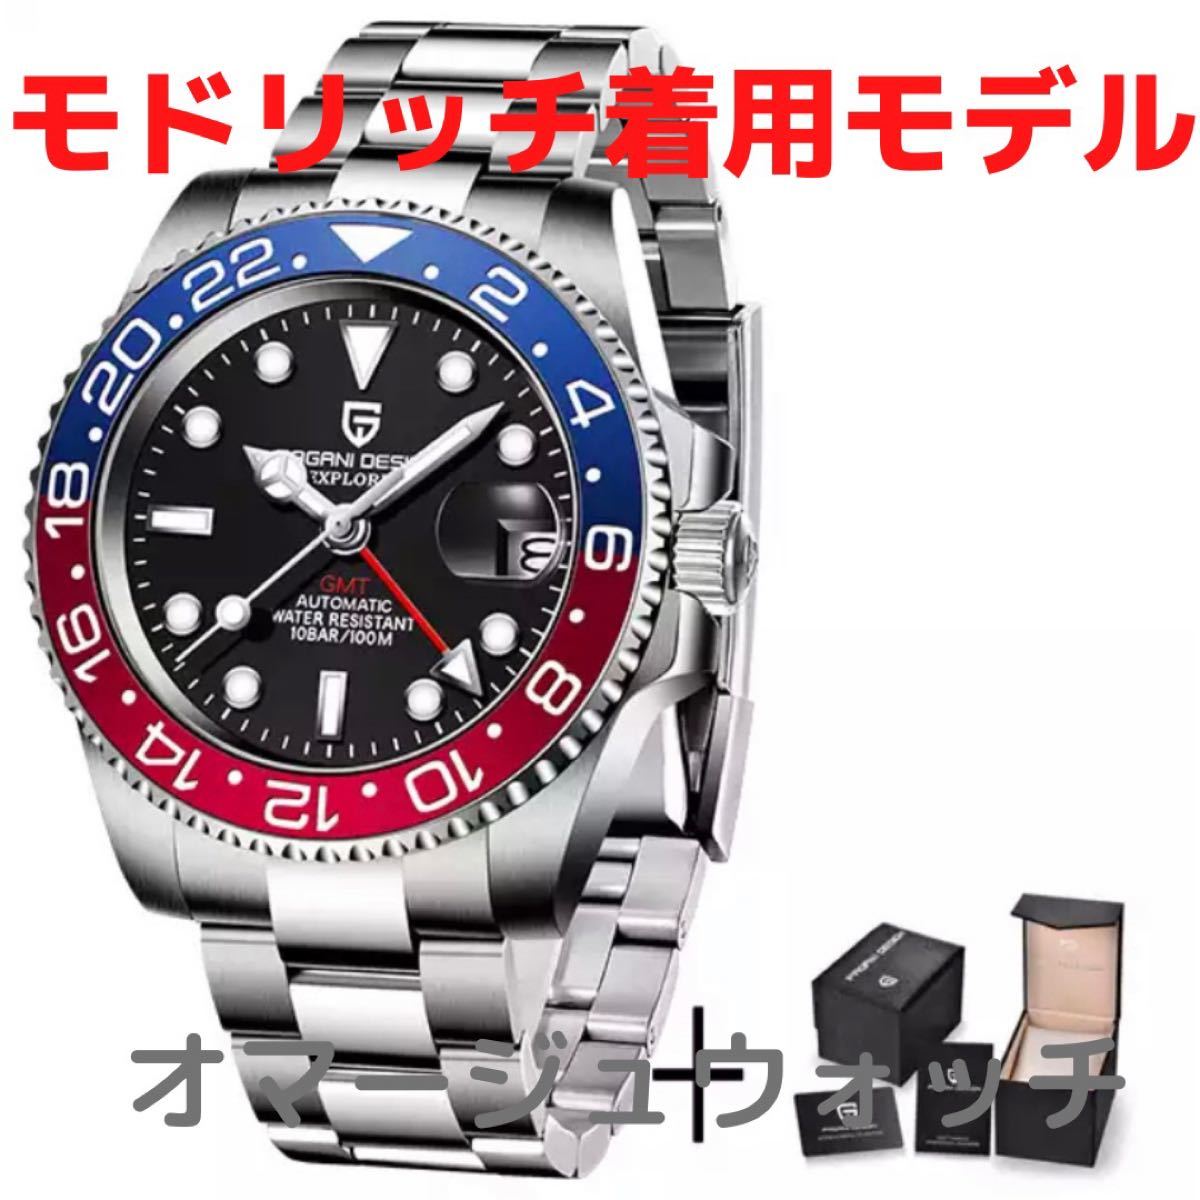 【日本未発売 アメリカ価格50,000円】機械式腕時計 オマージュウォッチ ロレックス GMTマスター スタイルペプシカラー